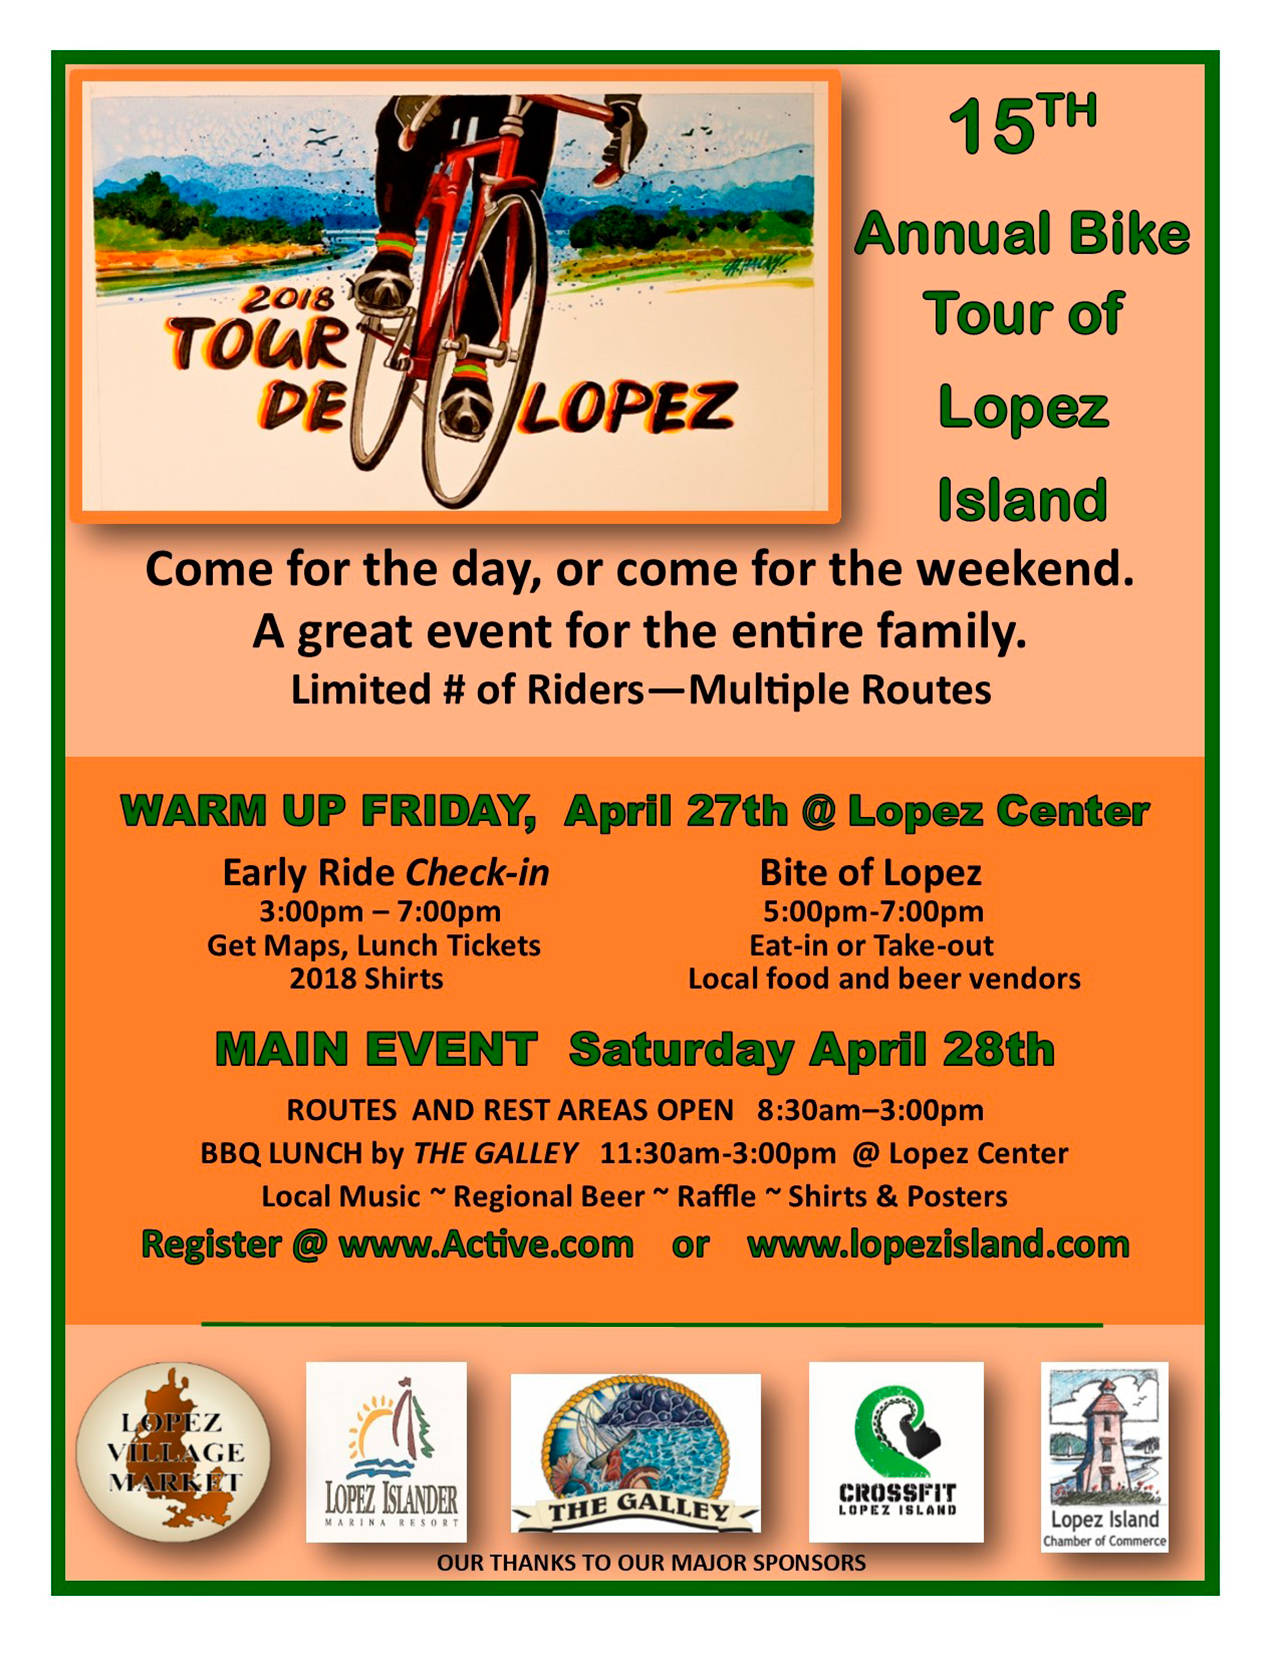 Tour de Lopez rides again